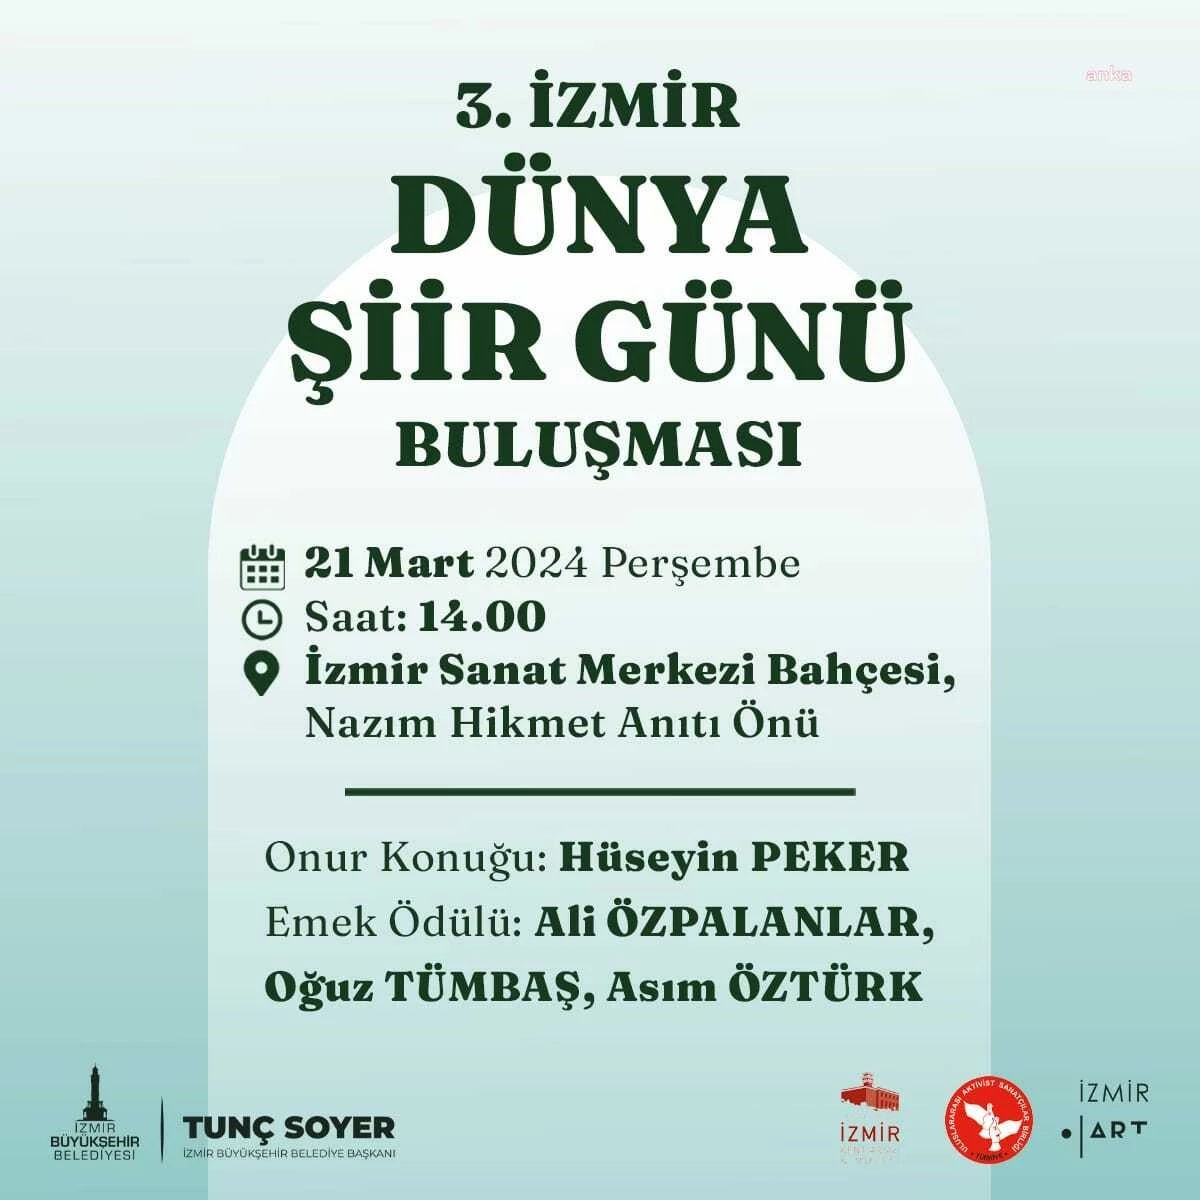 İzmir Büyükşehir Belediyesi 3. Dünya Şiir Günü Buluşması düzenliyor